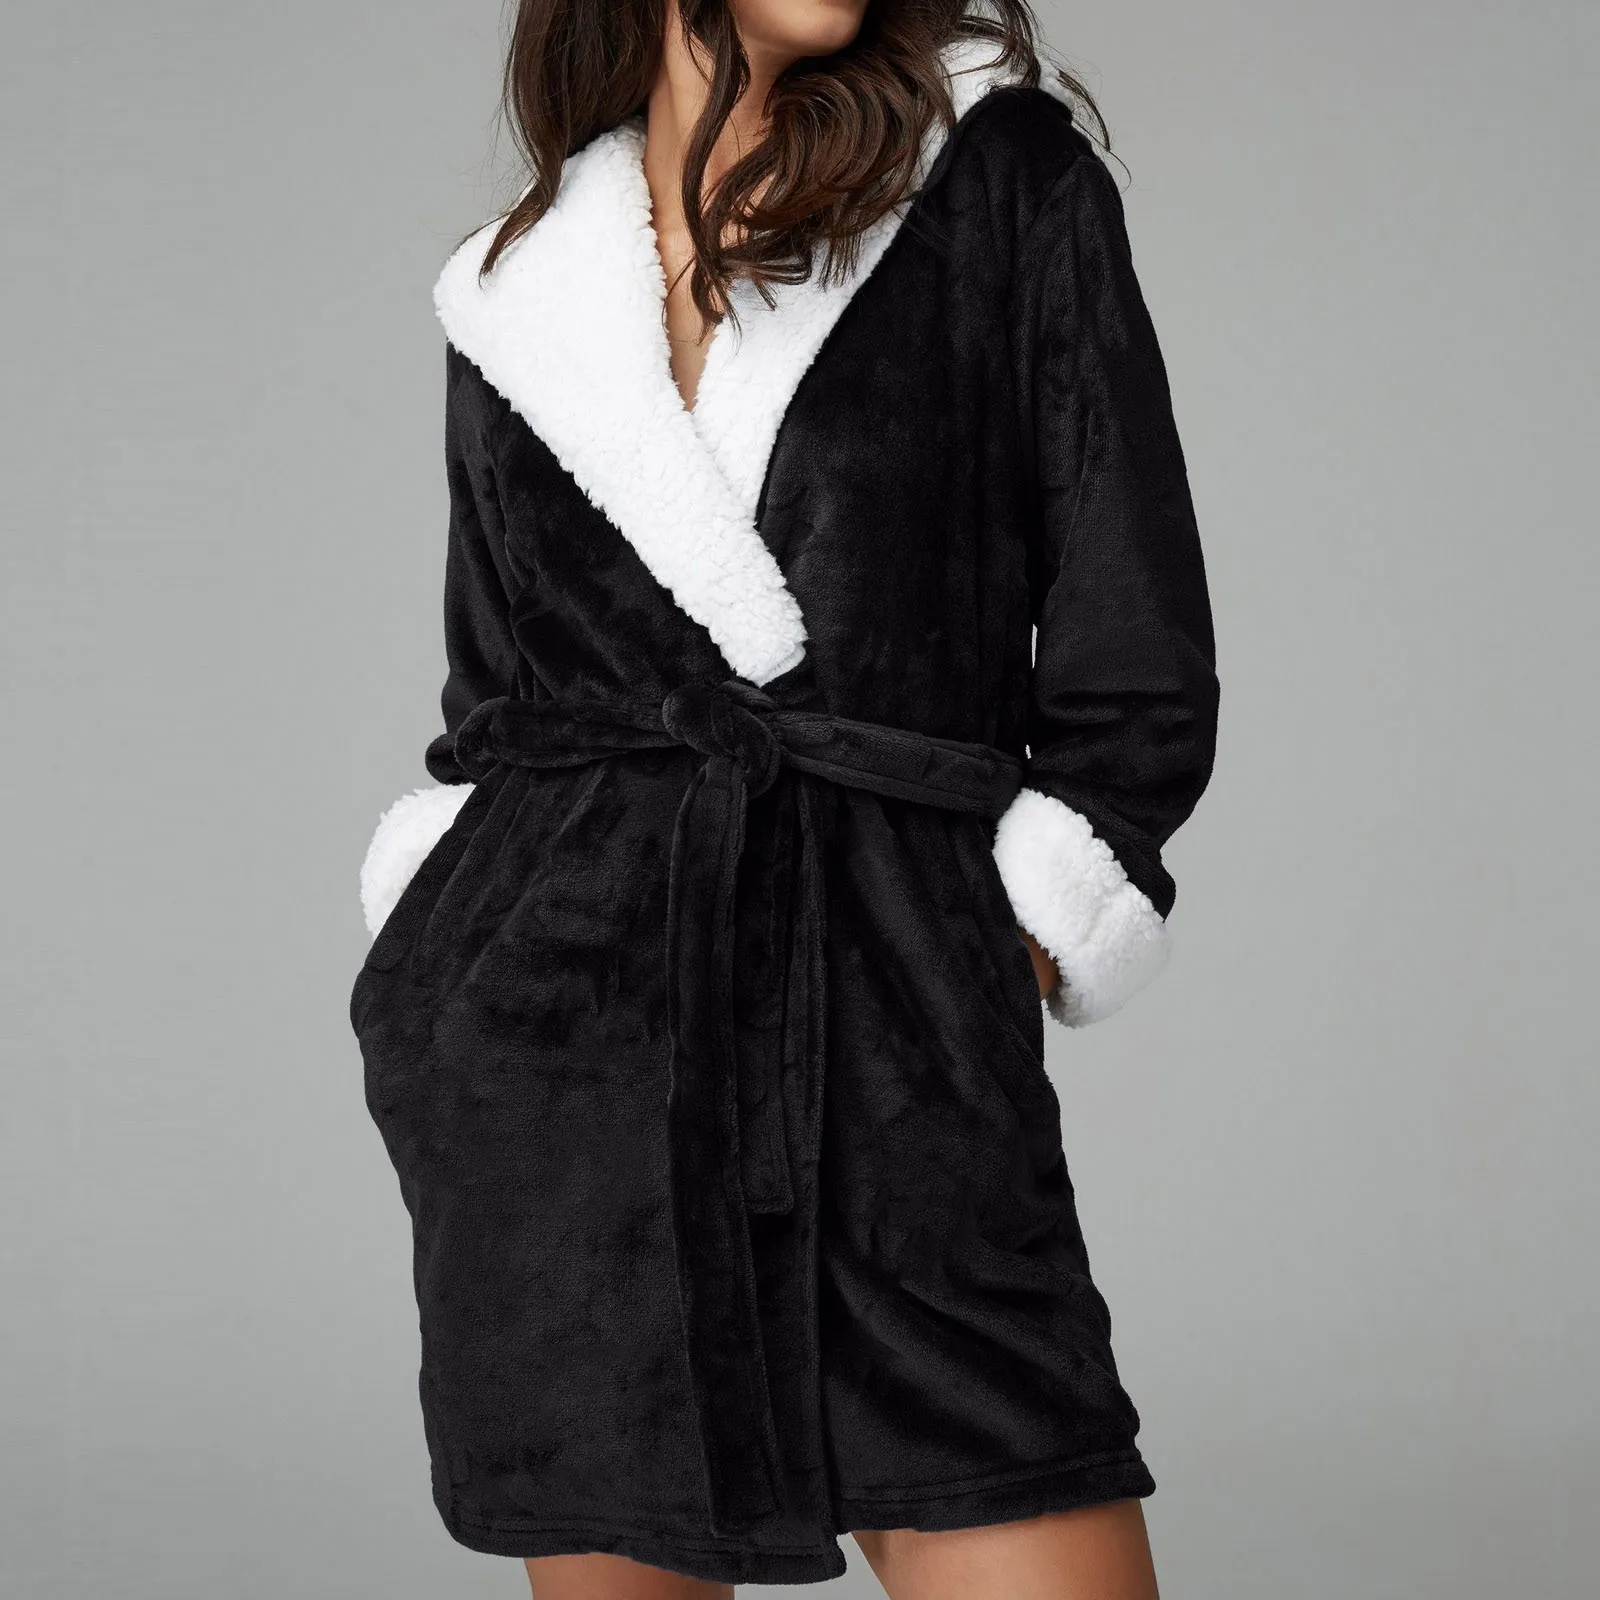 Женский флисовый халат с капюшоном | AliExpress